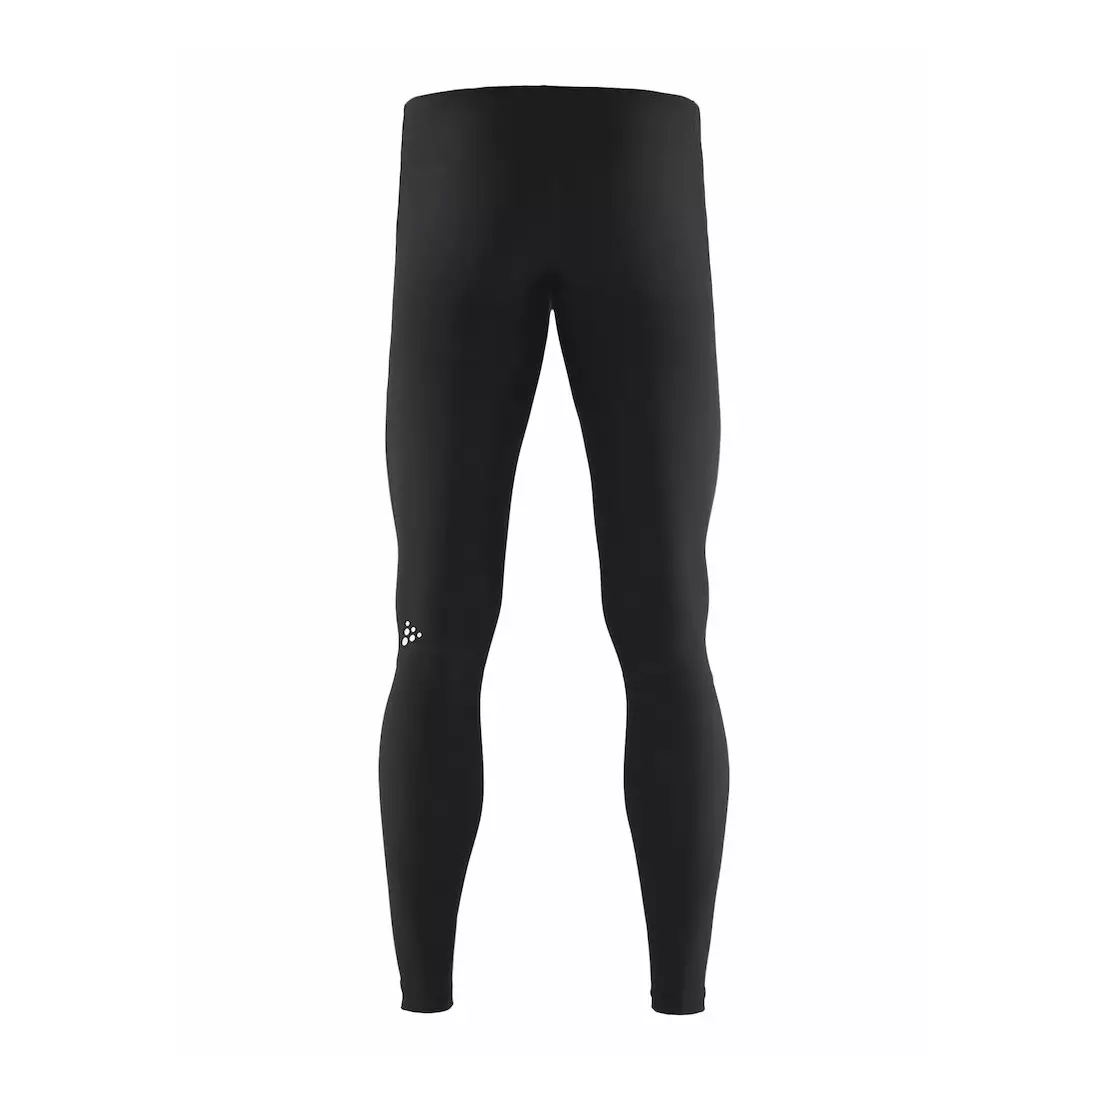 Pantaloni de alergare pentru bărbați CRAFT RADIATE, neizolați, negri 1905388-999000